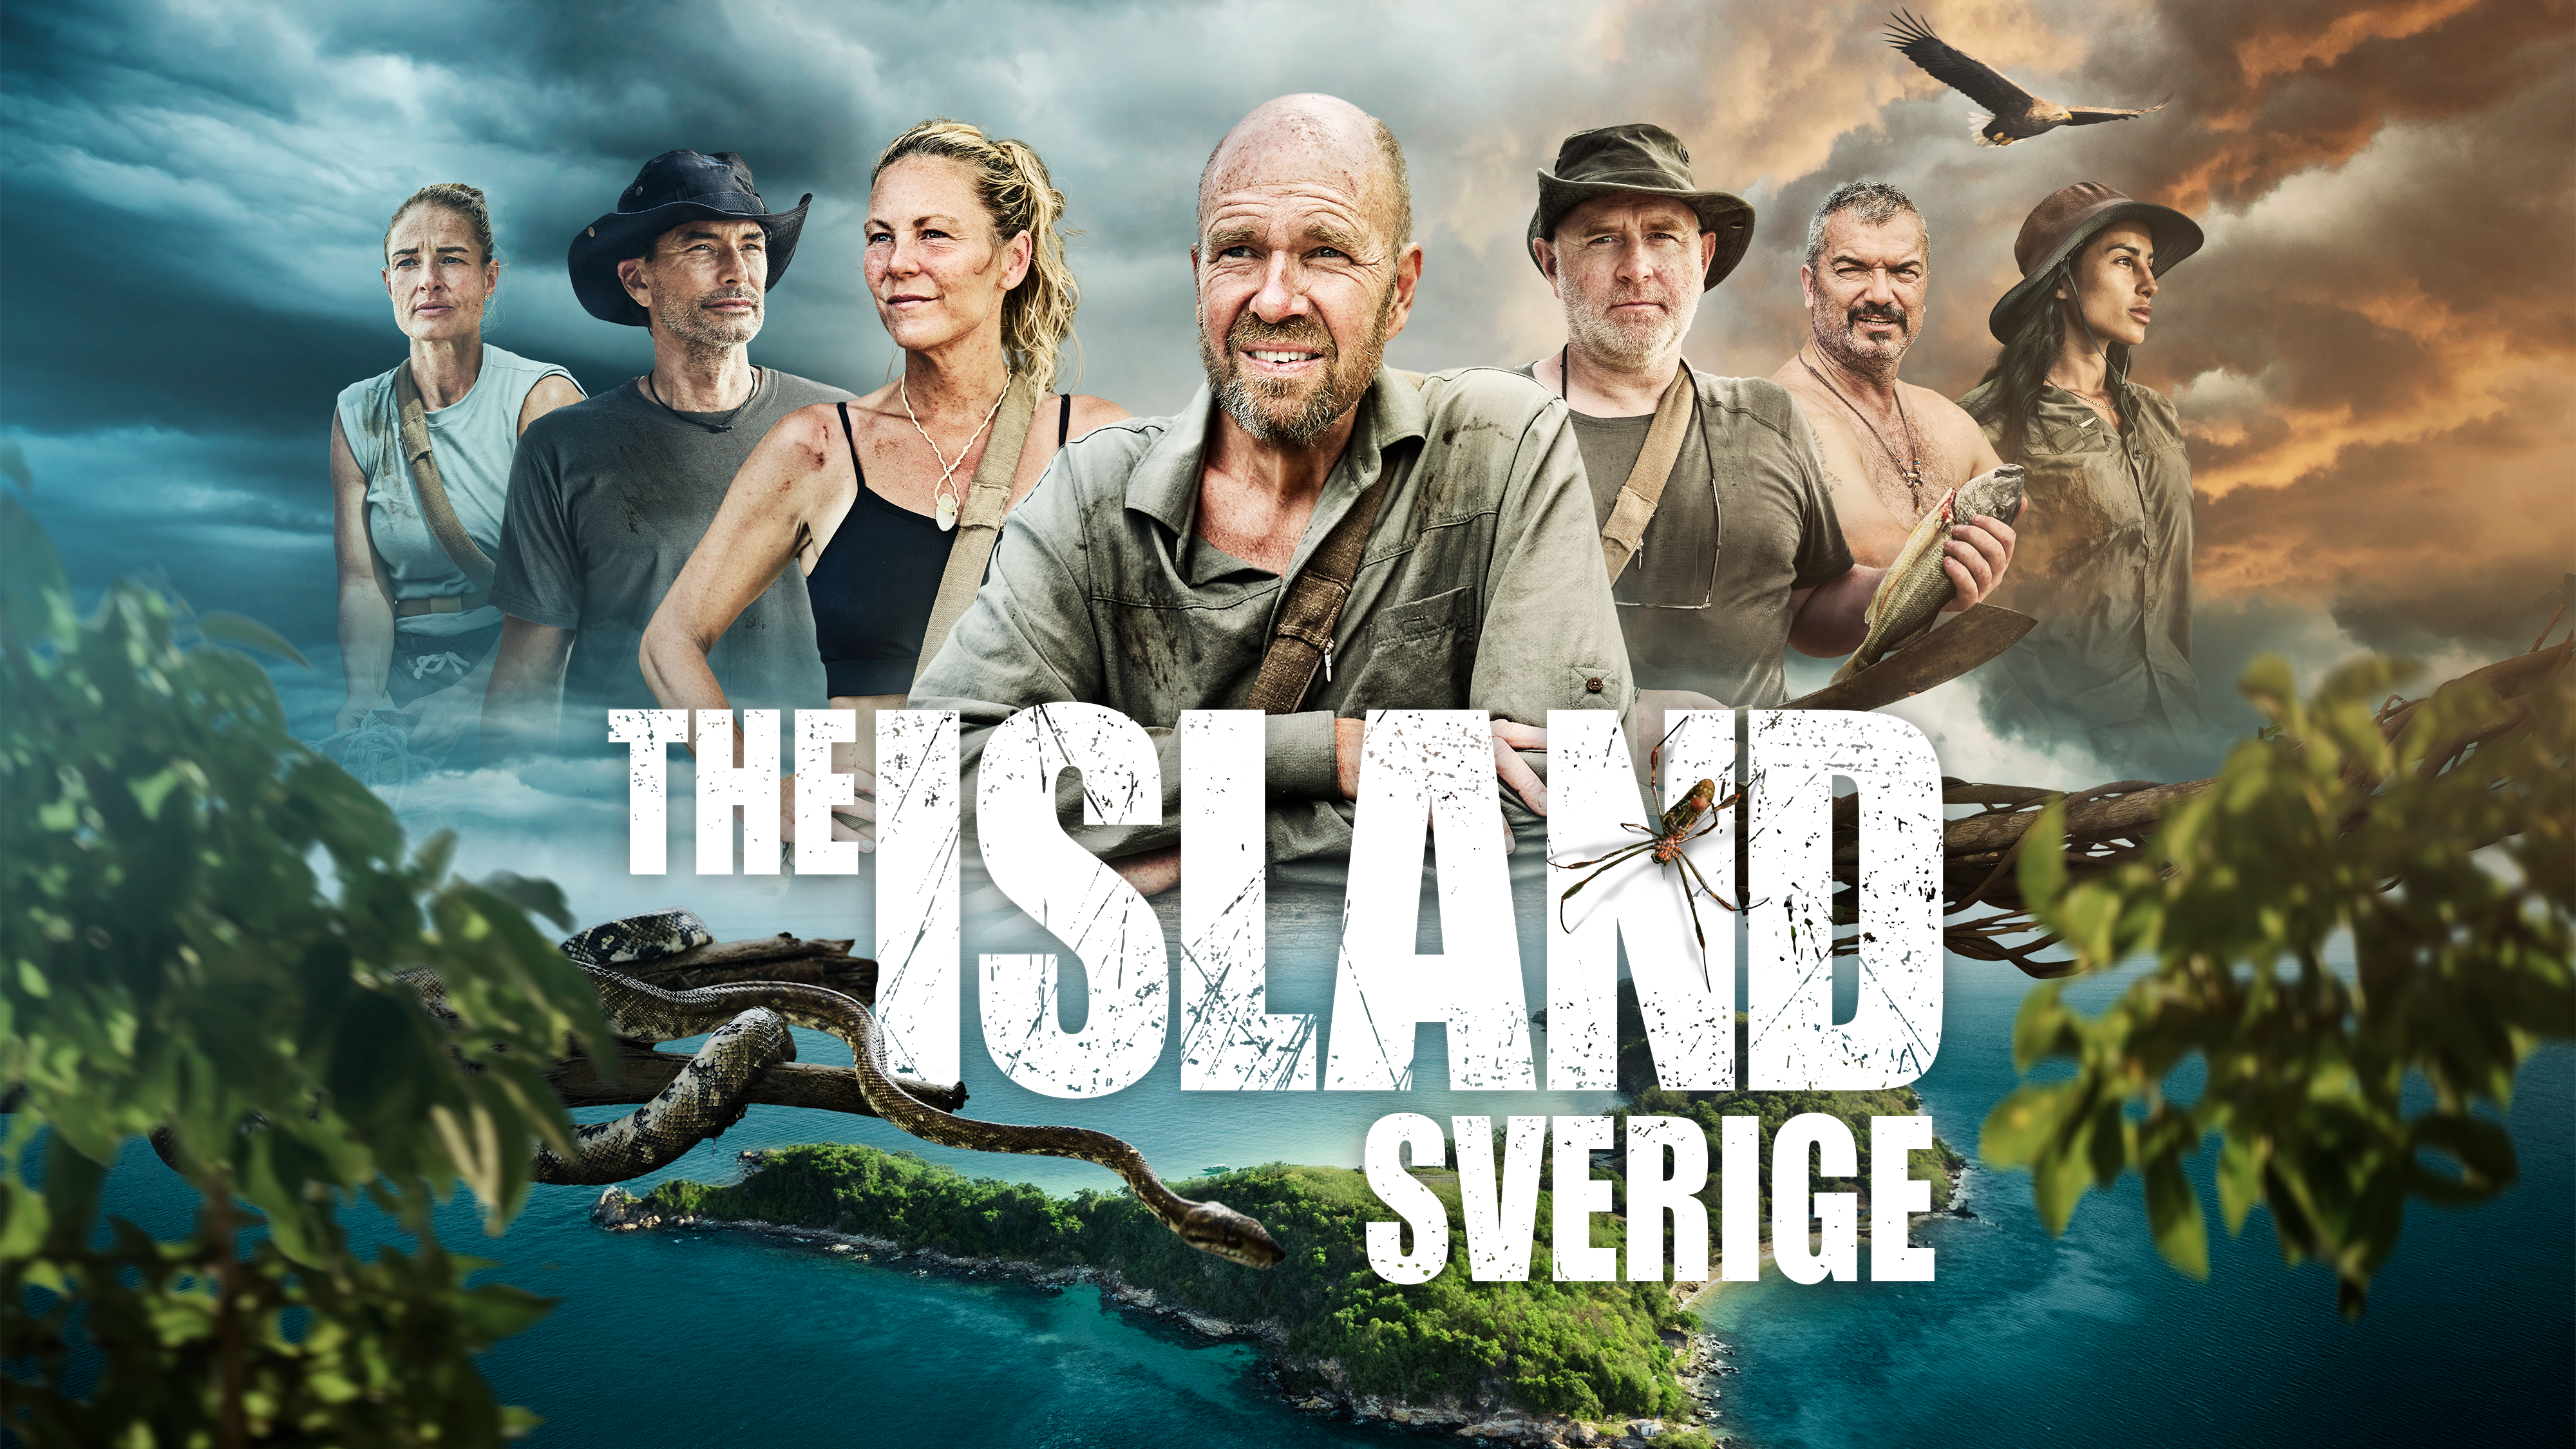 The Island Sverige 2023